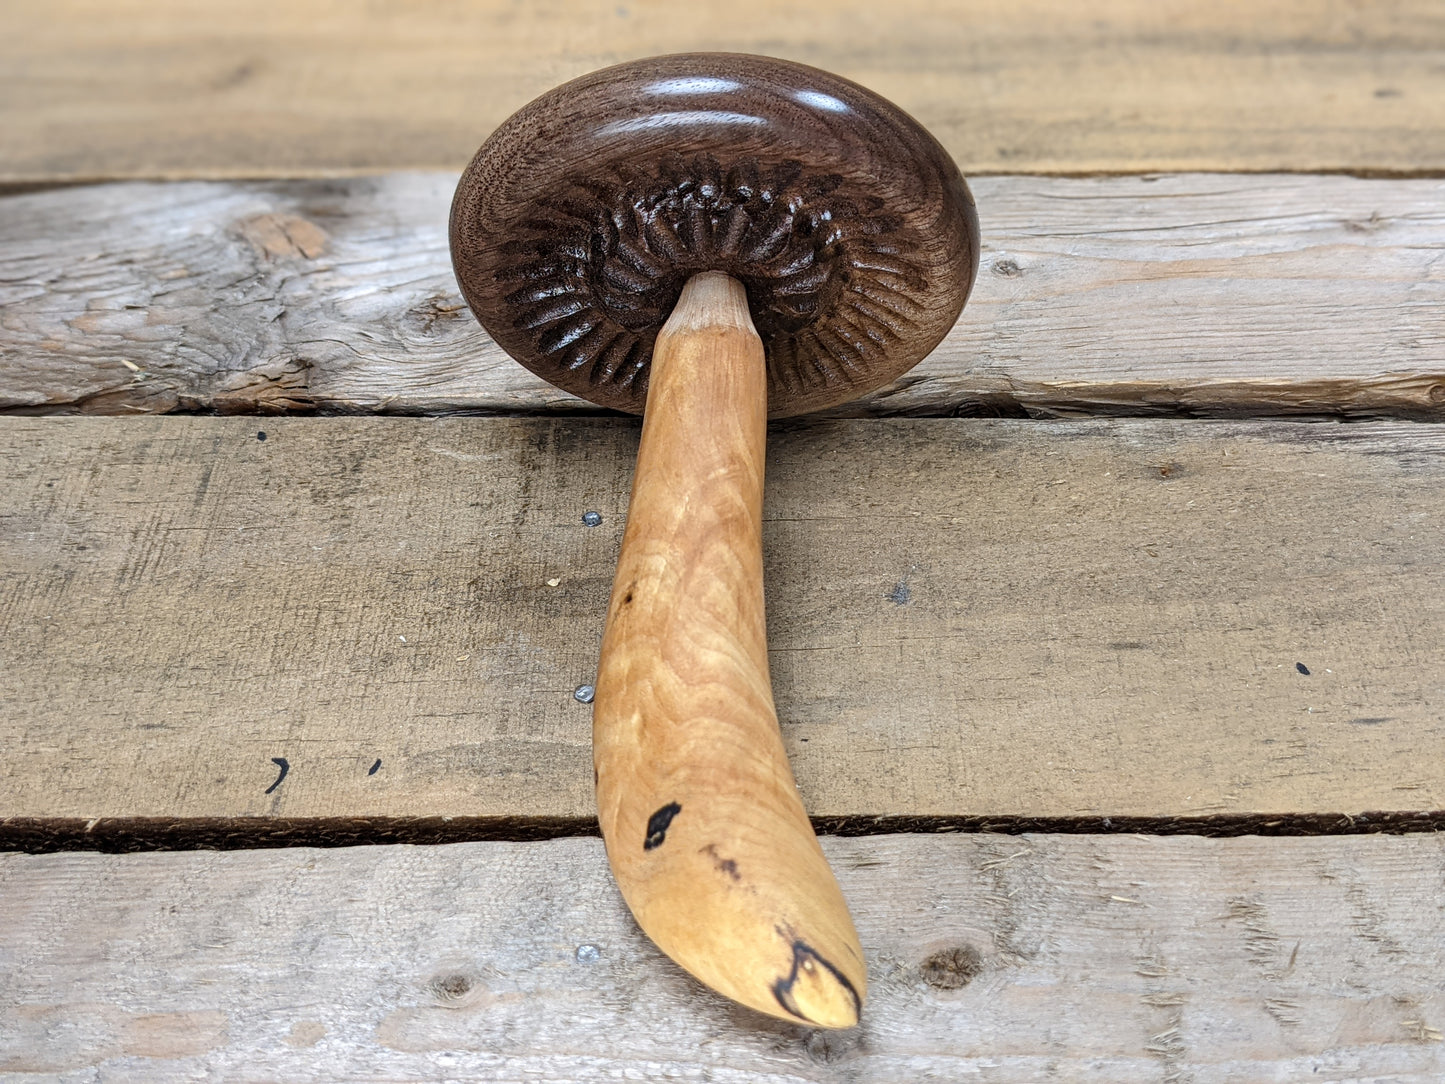 Black walnut and figured spalted maple darning mushroom